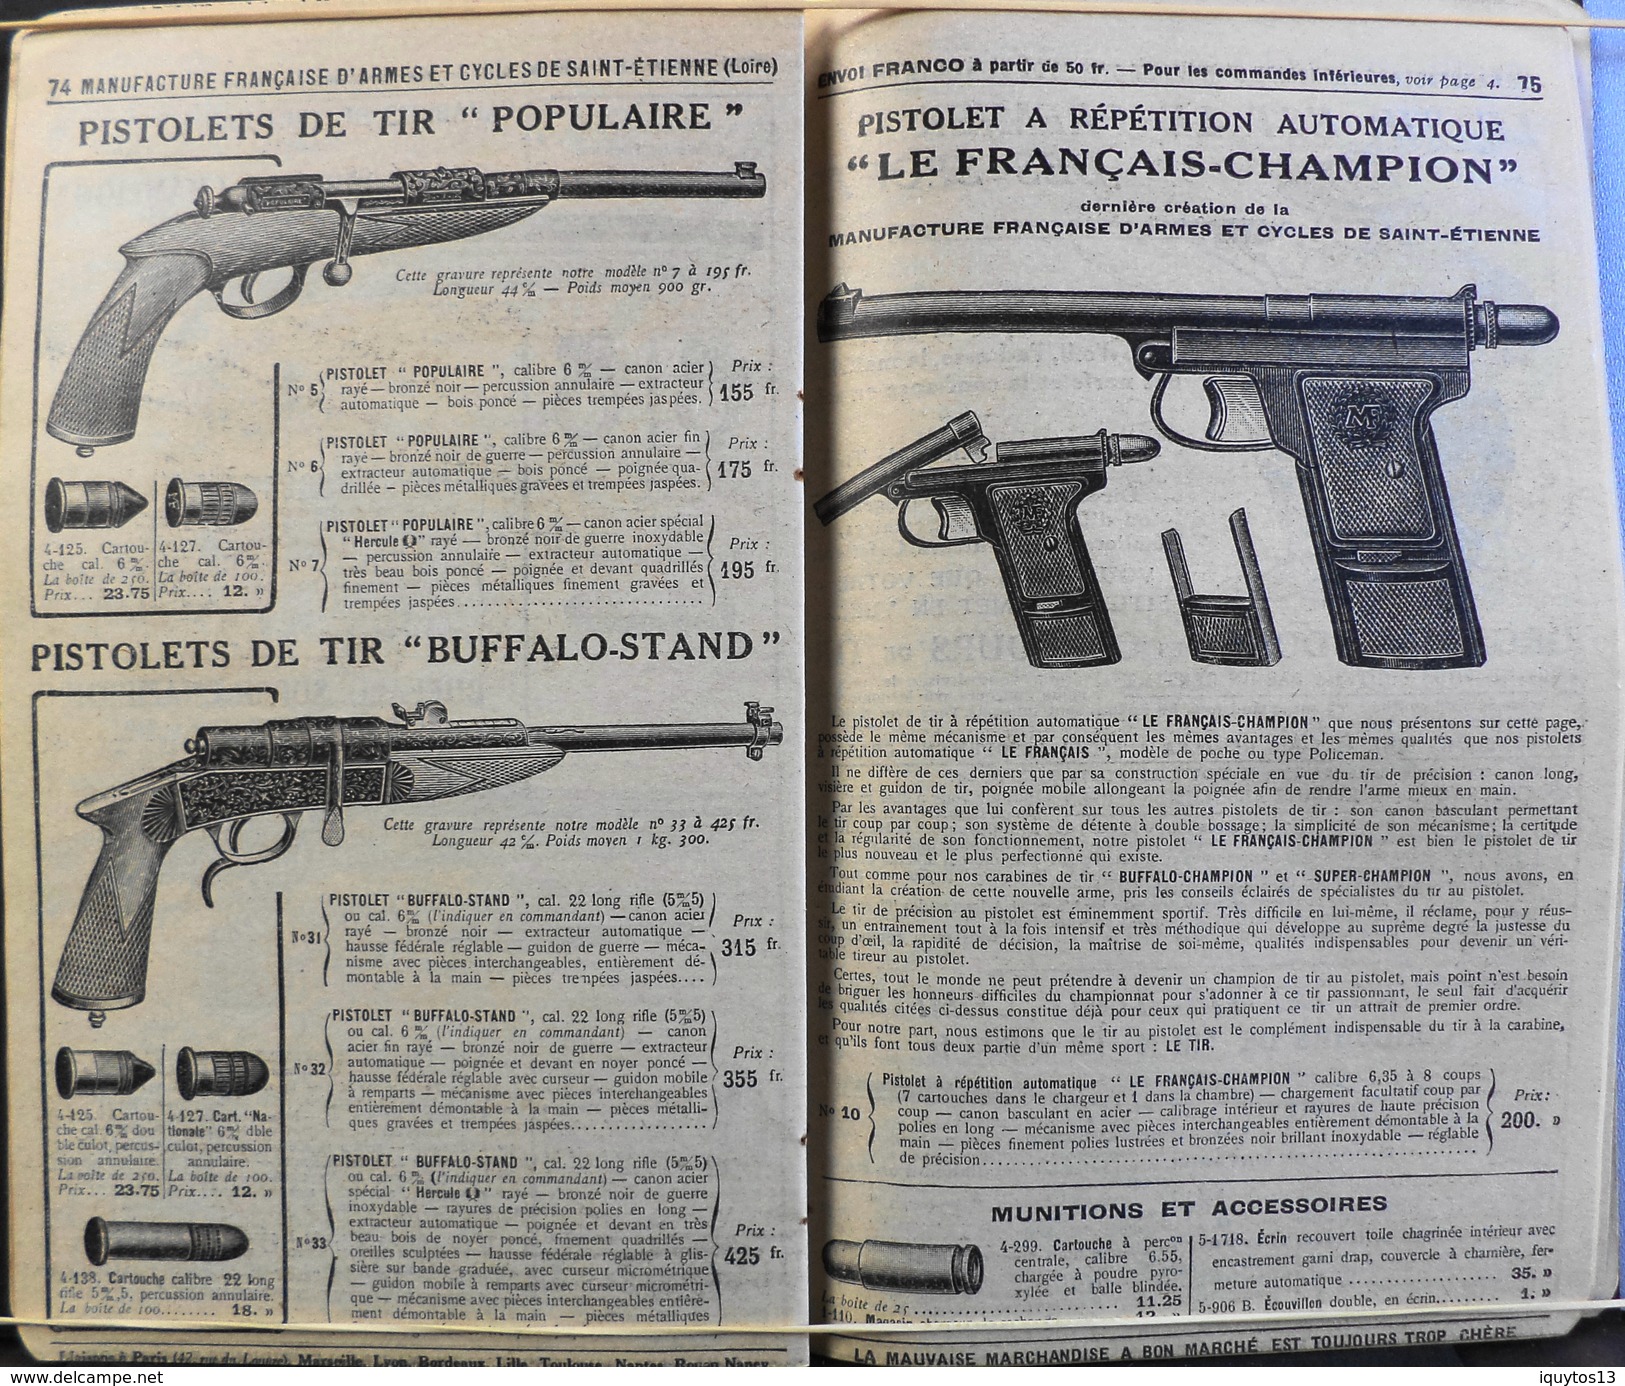 ANCIEN Catalogue MANUFRANCE ( M.F. ) Année 1926 - 132 pages d'Articles de Chasse, Fusils, Munitions, Pistolets, Pièges